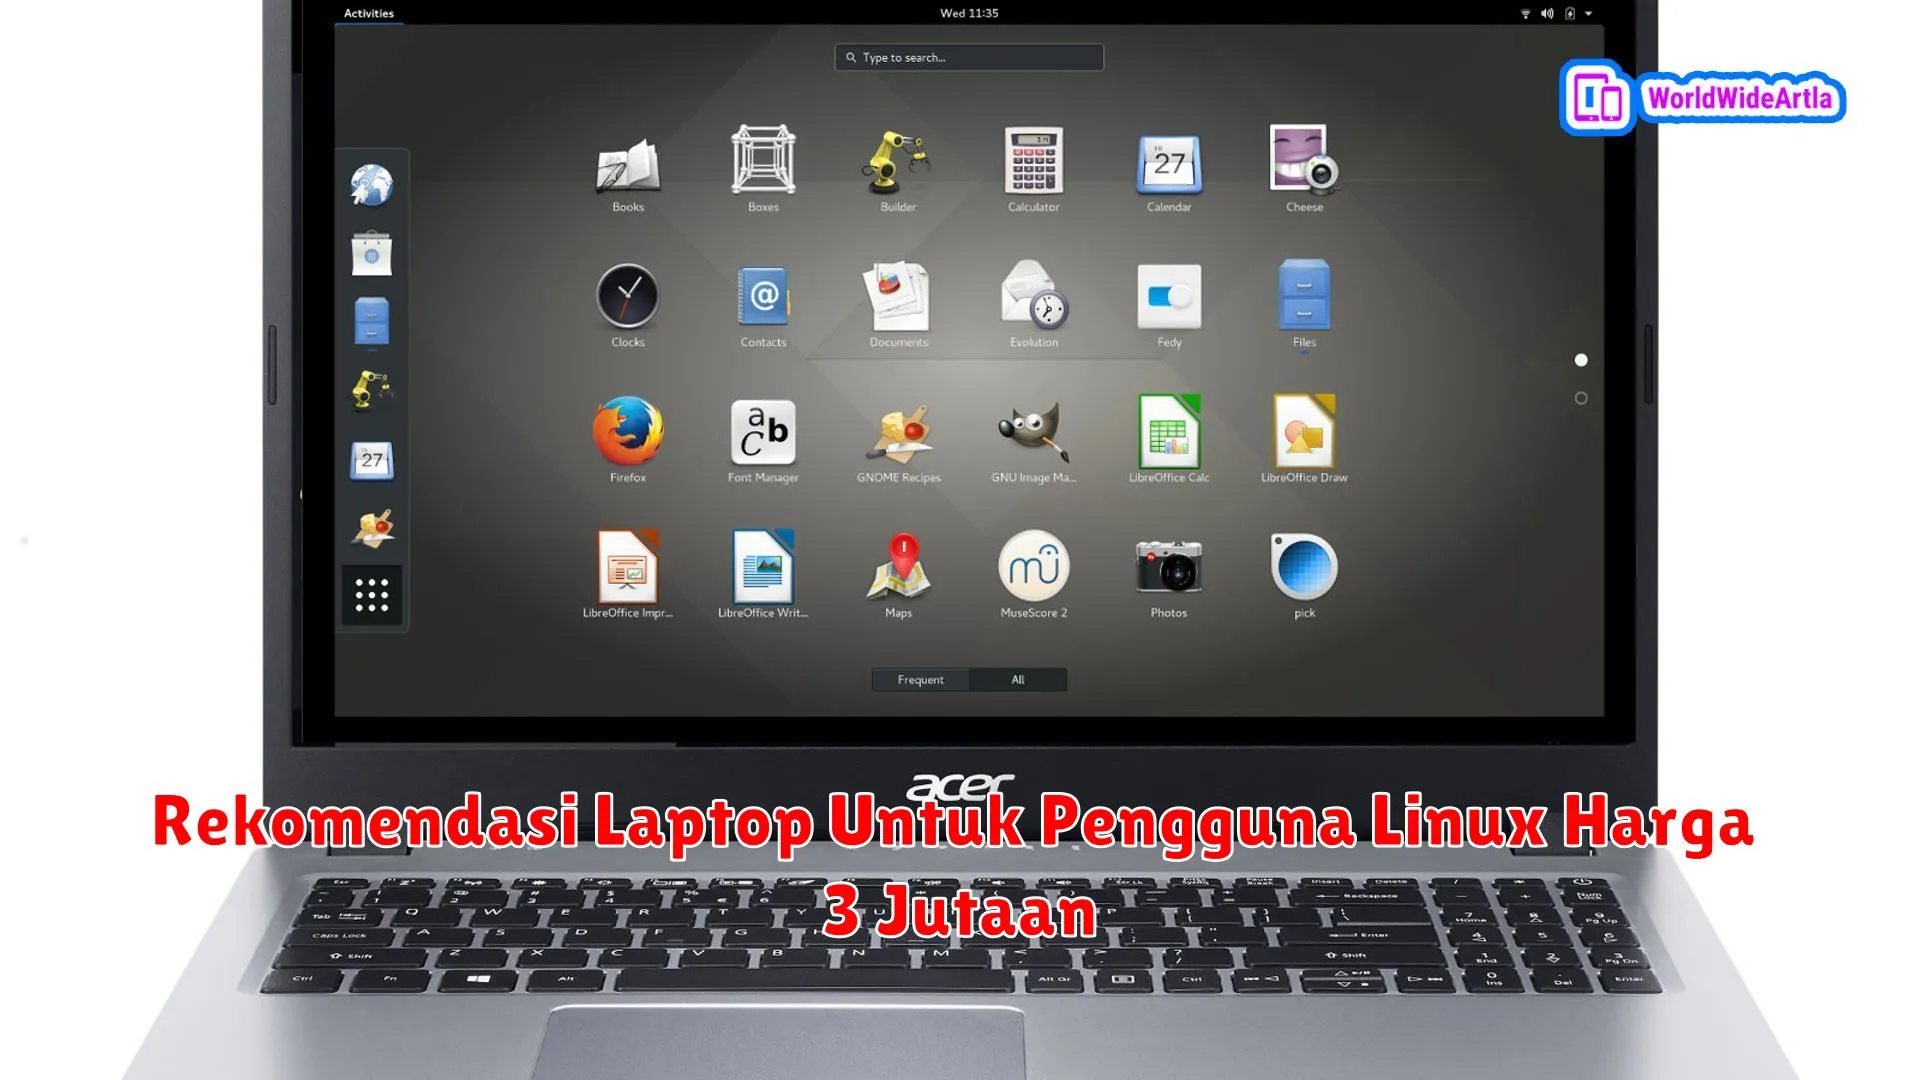 Rekomendasi Laptop Untuk Pengguna Linux Harga 3 Jutaan